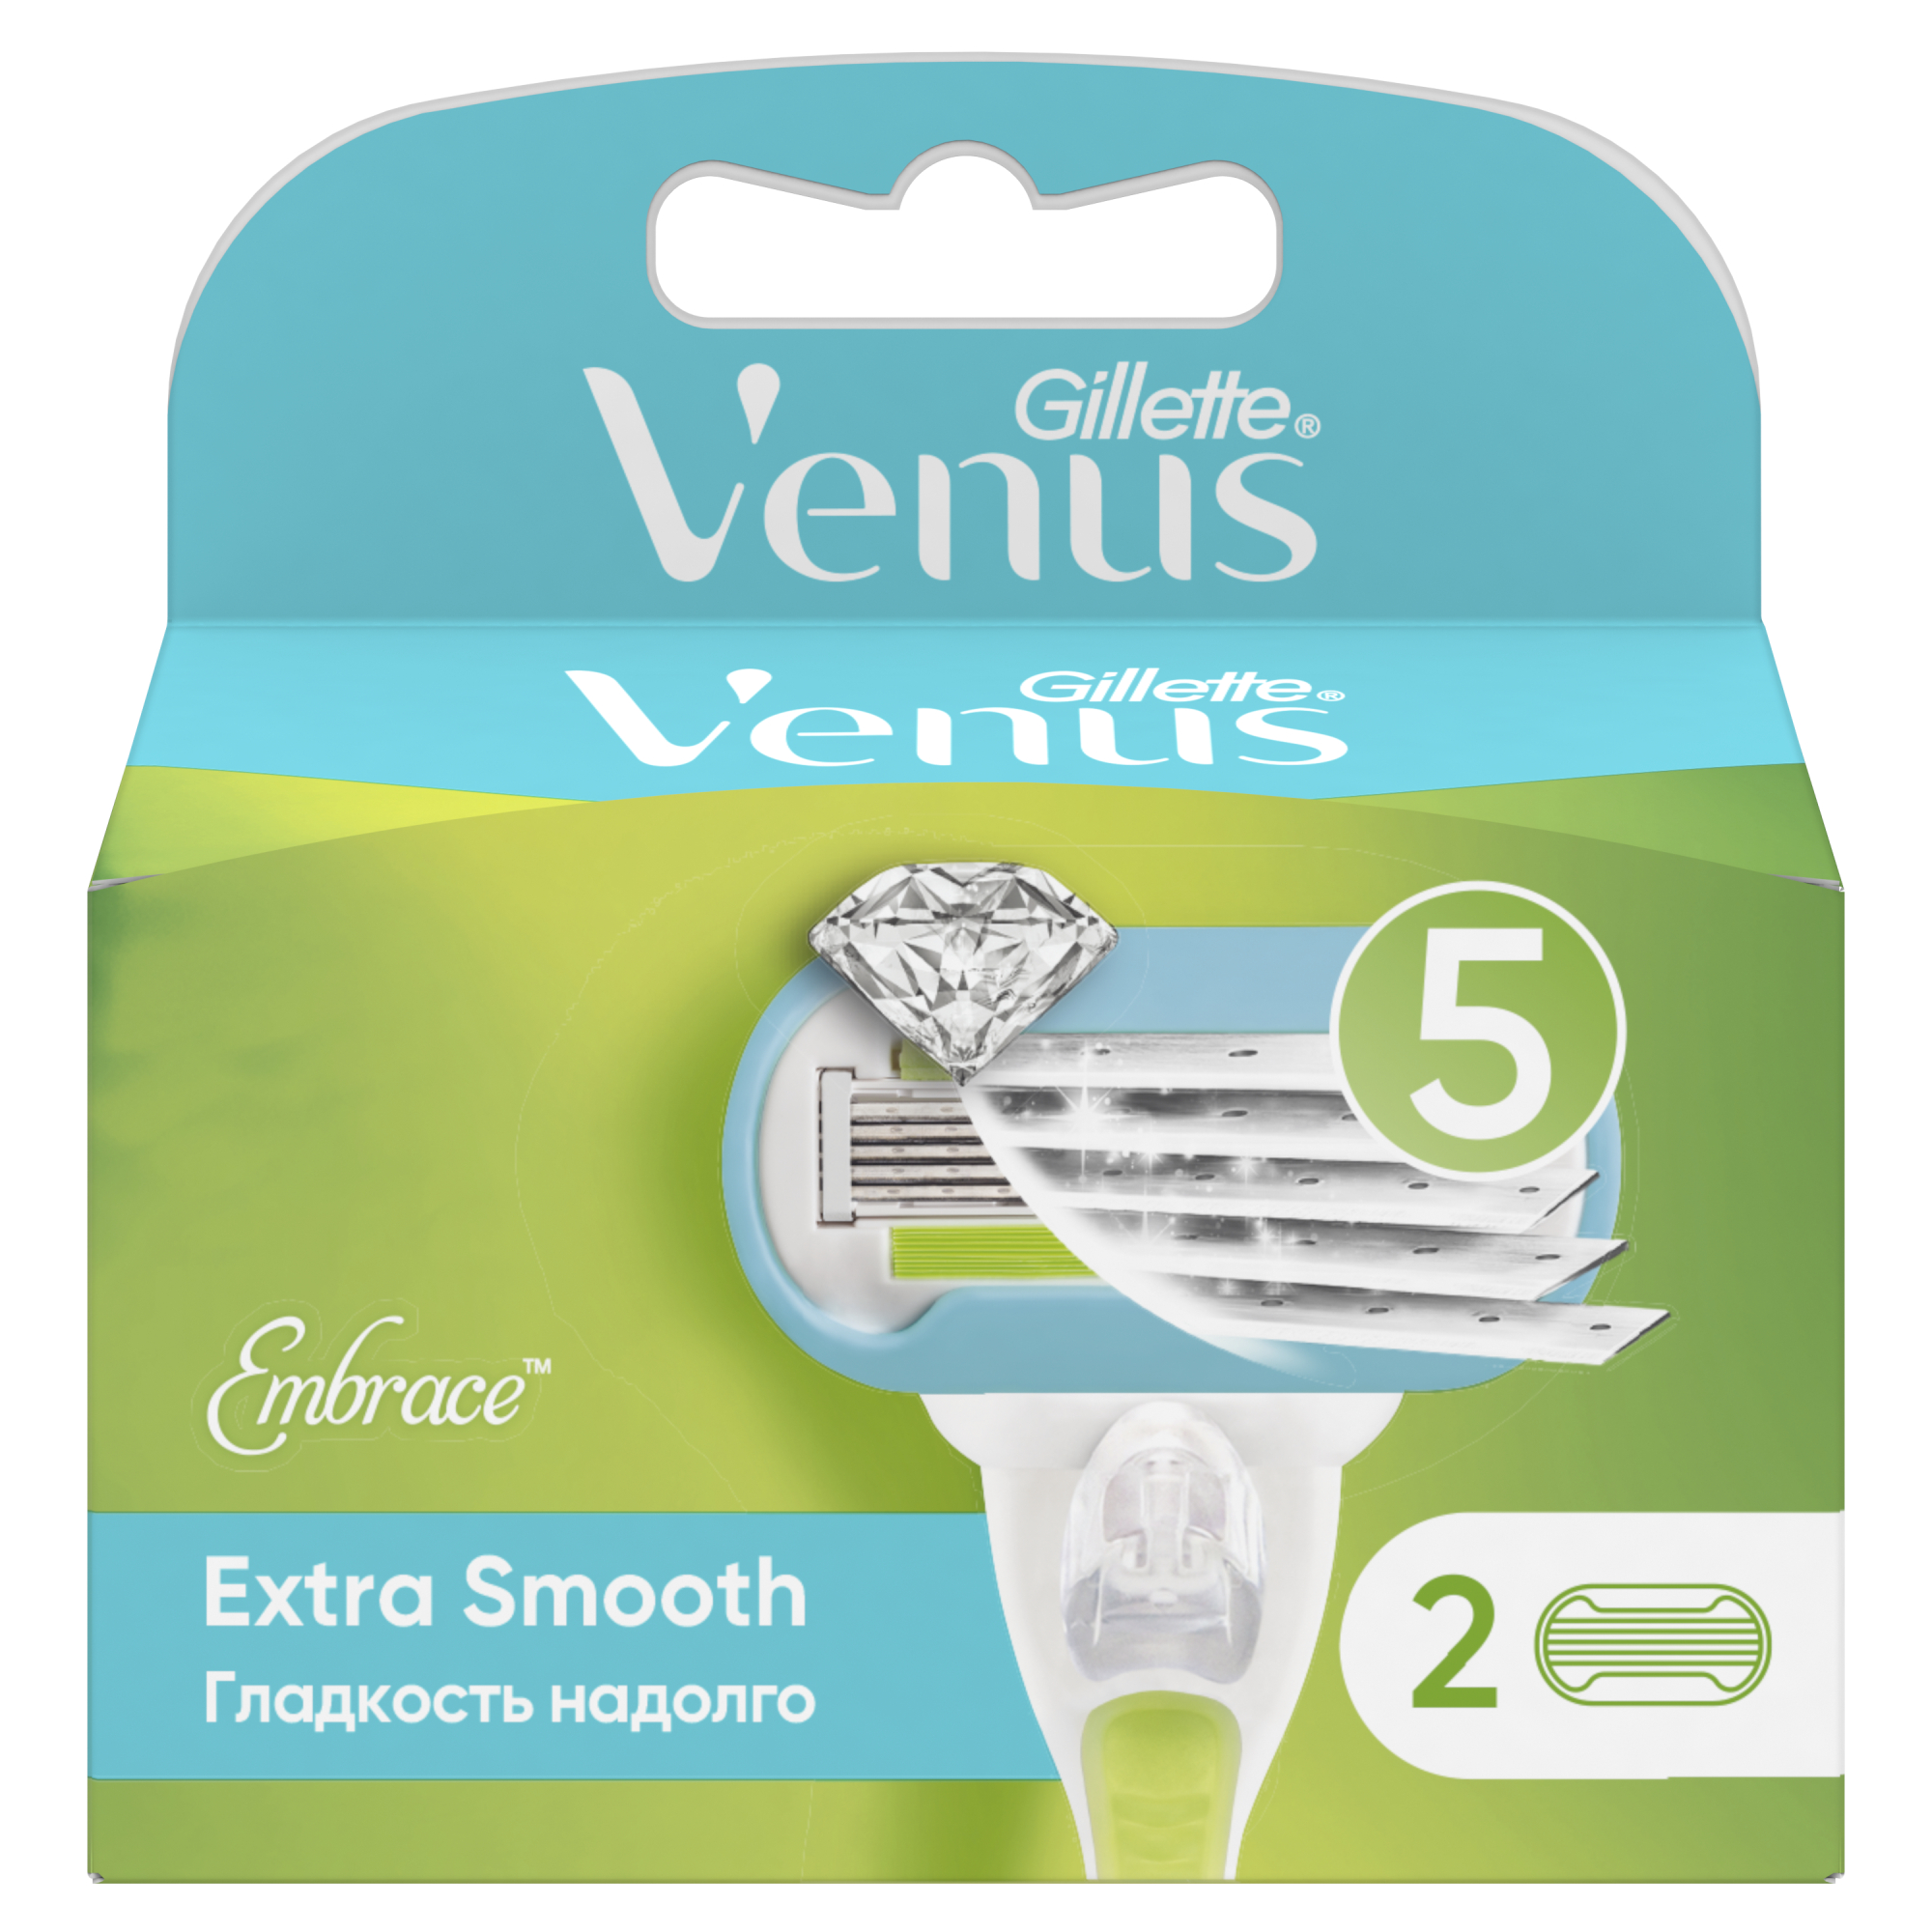 Сменные кассеты для женской бритвы Venus Extra Smooth, 5 лезвий, 2 шт невероятная гладкость надолго для опасной бритвы boker кожа